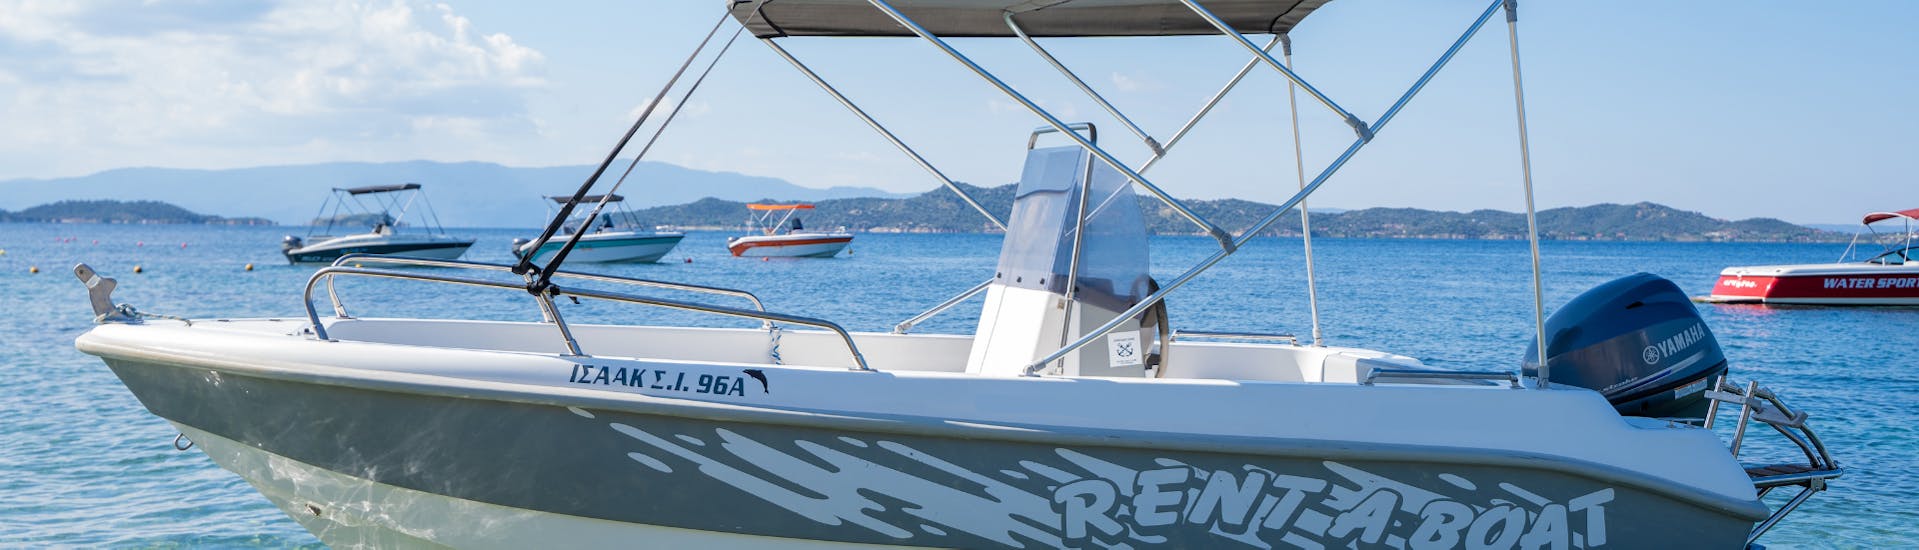 Photo du Poseidonas lors de la Location de bateau à Ouranoupoli (jusqu'à 5 personnes) sans Permis avec Poseidon Watersports Ouranoupoli.